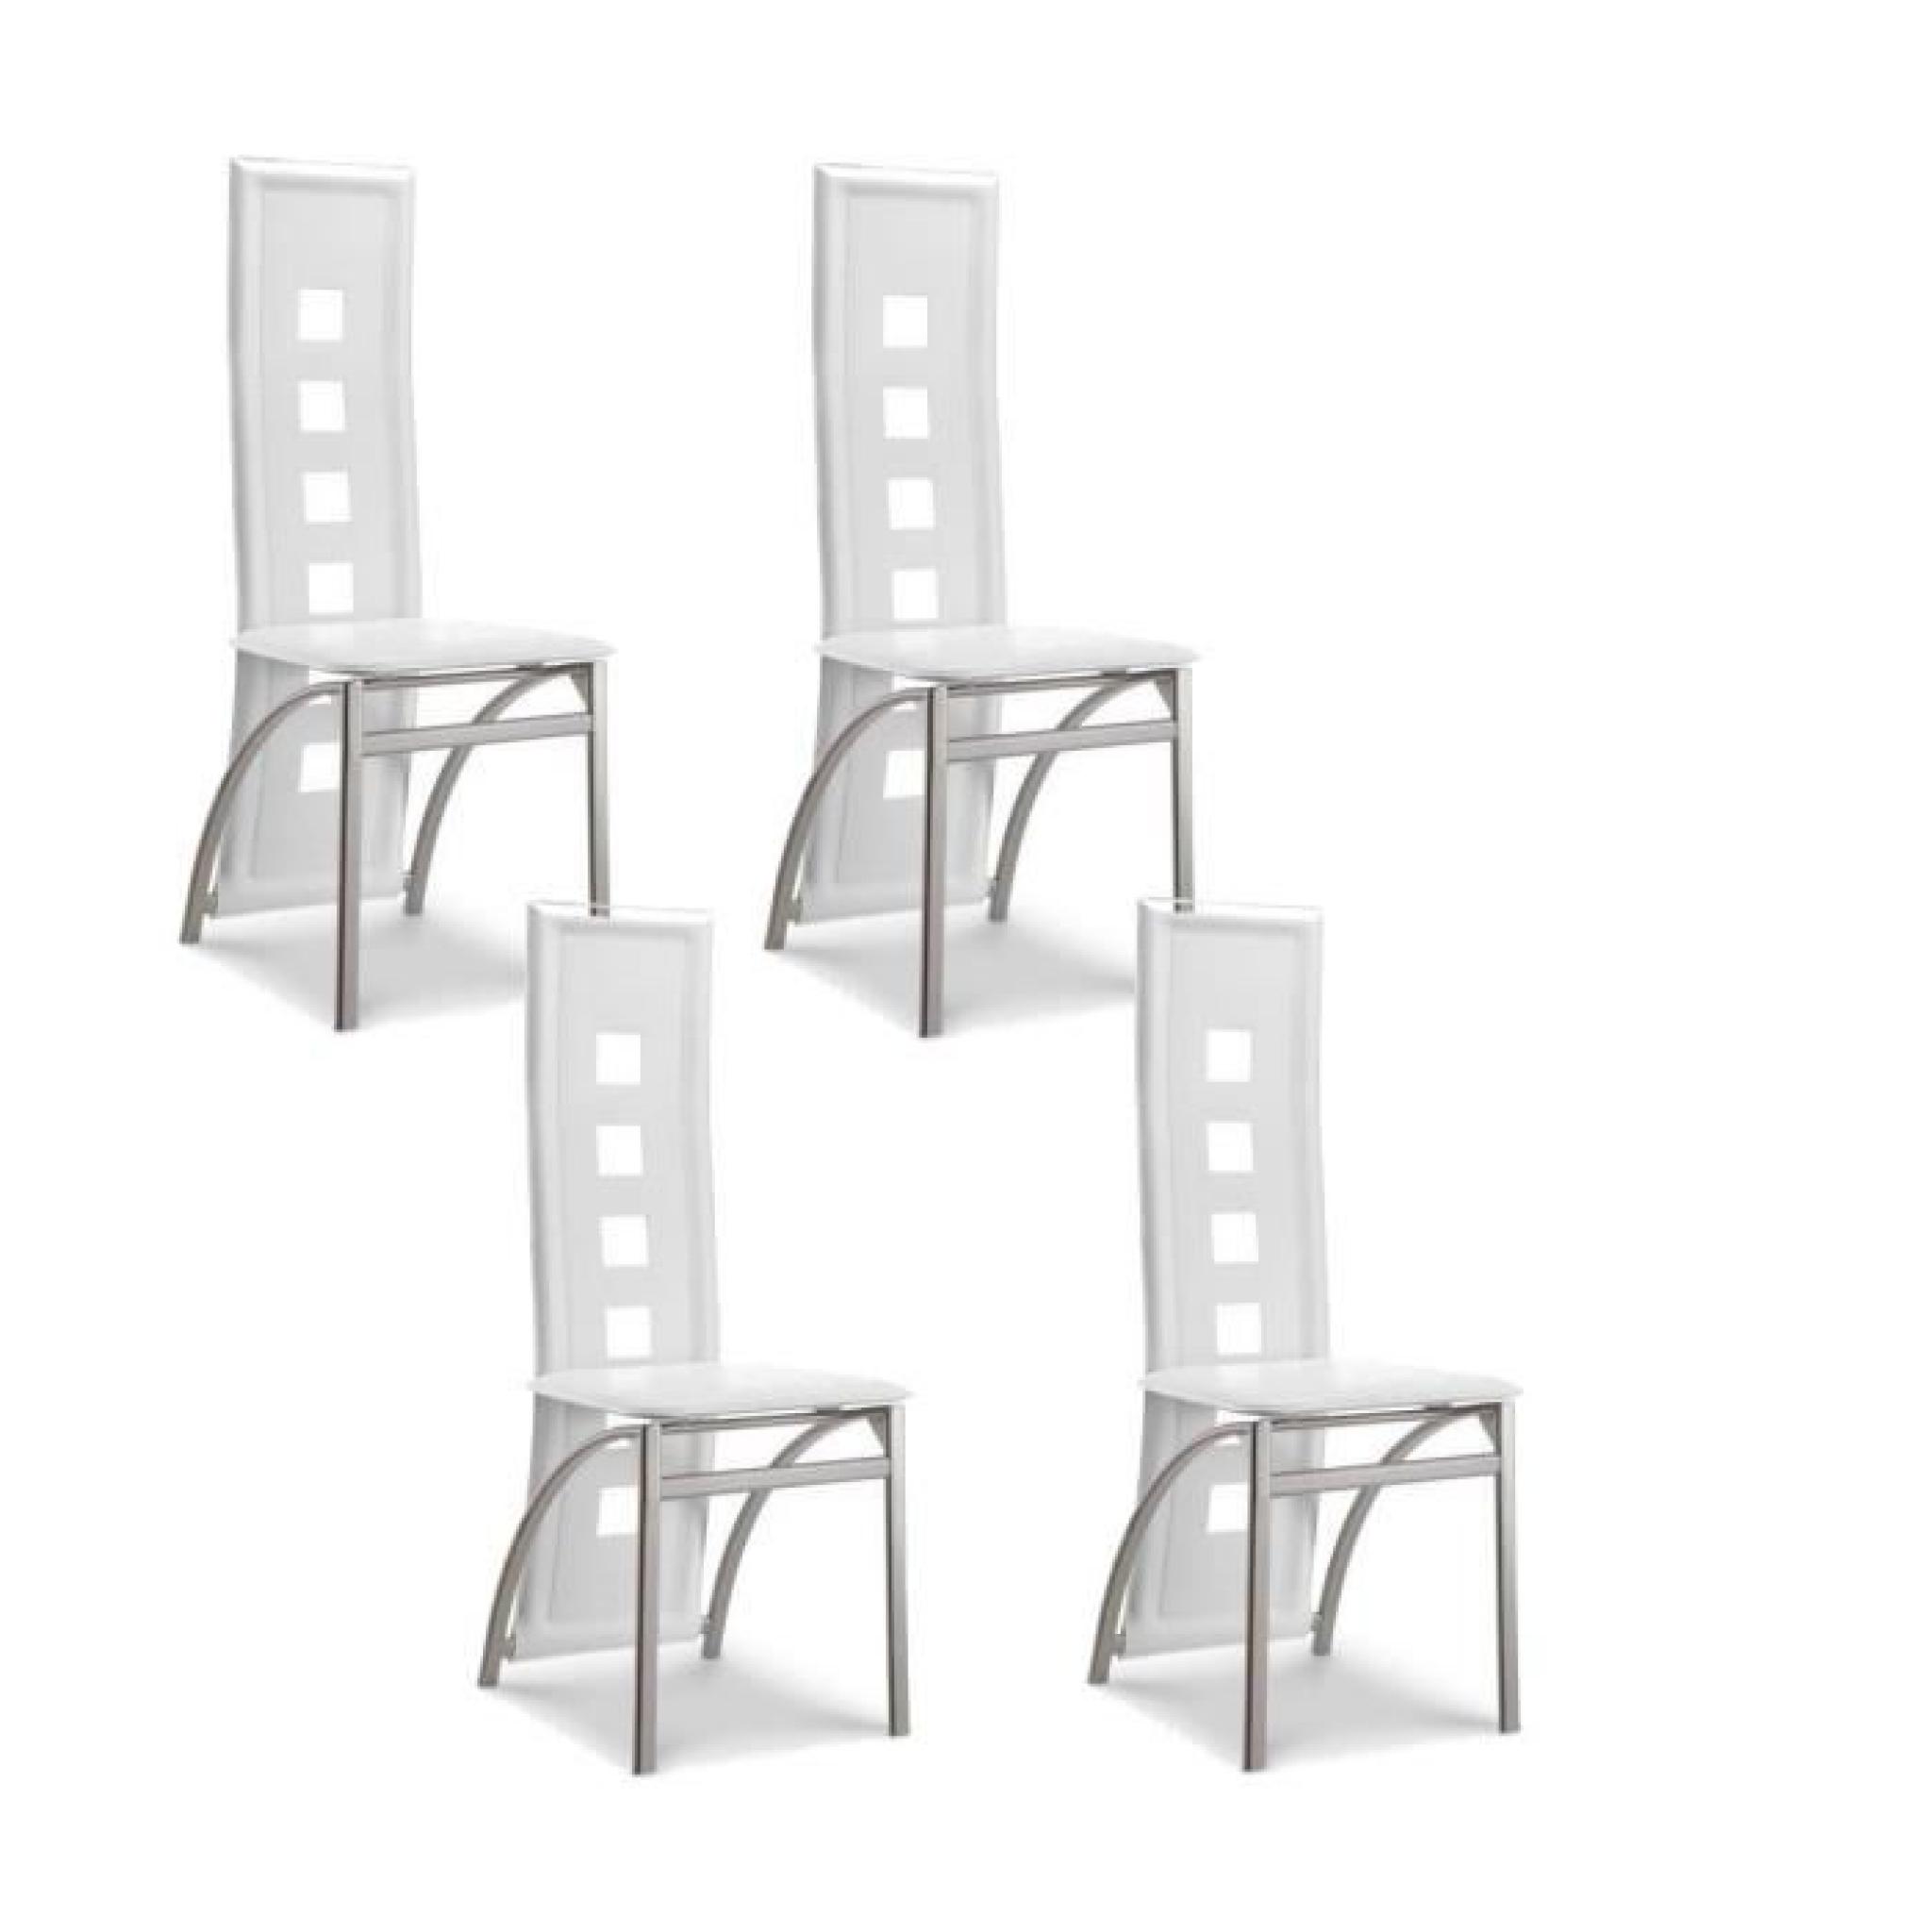 EIFFEL lot de 4 chaises de salle à manger blanches et grise simili et aluminium - Design